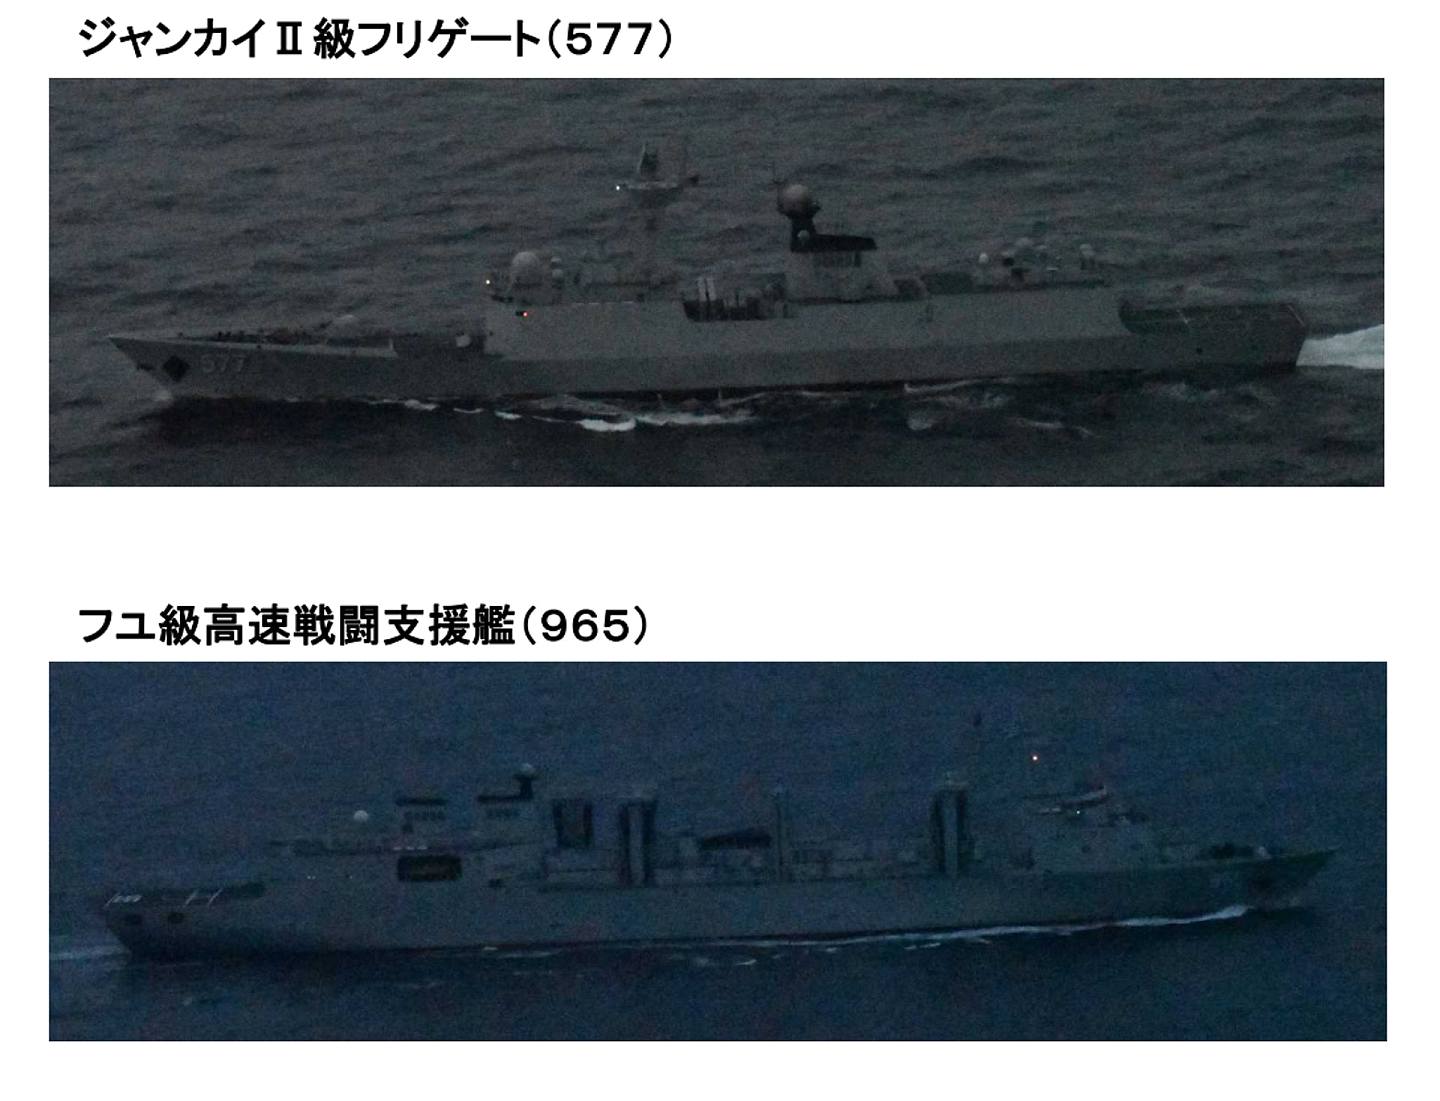 除辽宁舰外，另外5艘军舰分别是055型驱逐舰南昌号，052D型驱逐舰成都号、太原号，054A型护卫舰黄冈号及901型综合补给舰呼伦湖号。 （日本防卫省统合幕僚监部官网截图）